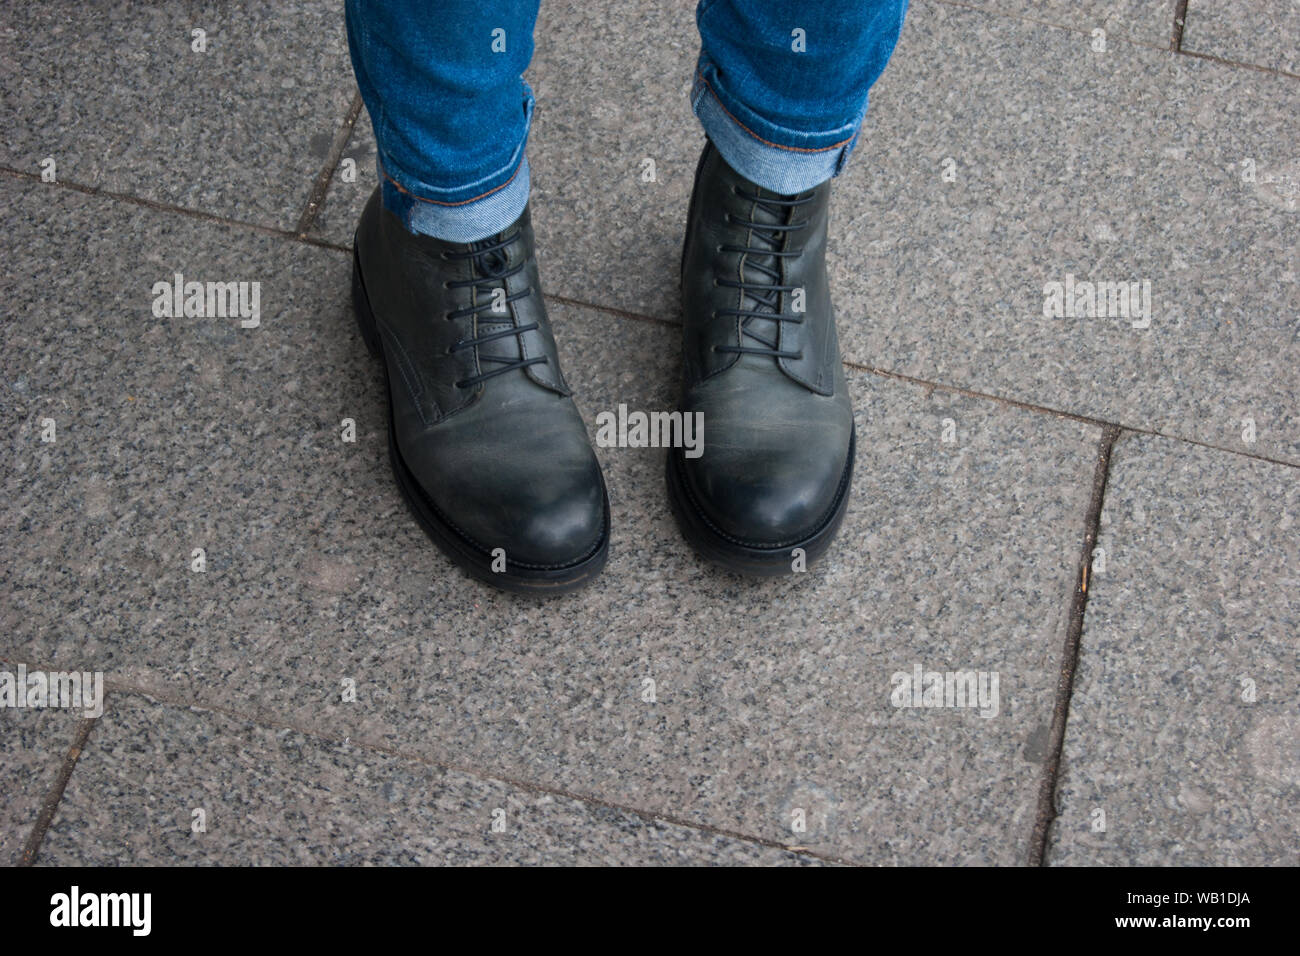 Foto de una parte del cuerpo humano. Piernas femeninas en negro unisex botas y jeans stand con calcetines en el interior. Viajar, comodidad. Dudas, modestia, Foto de stock